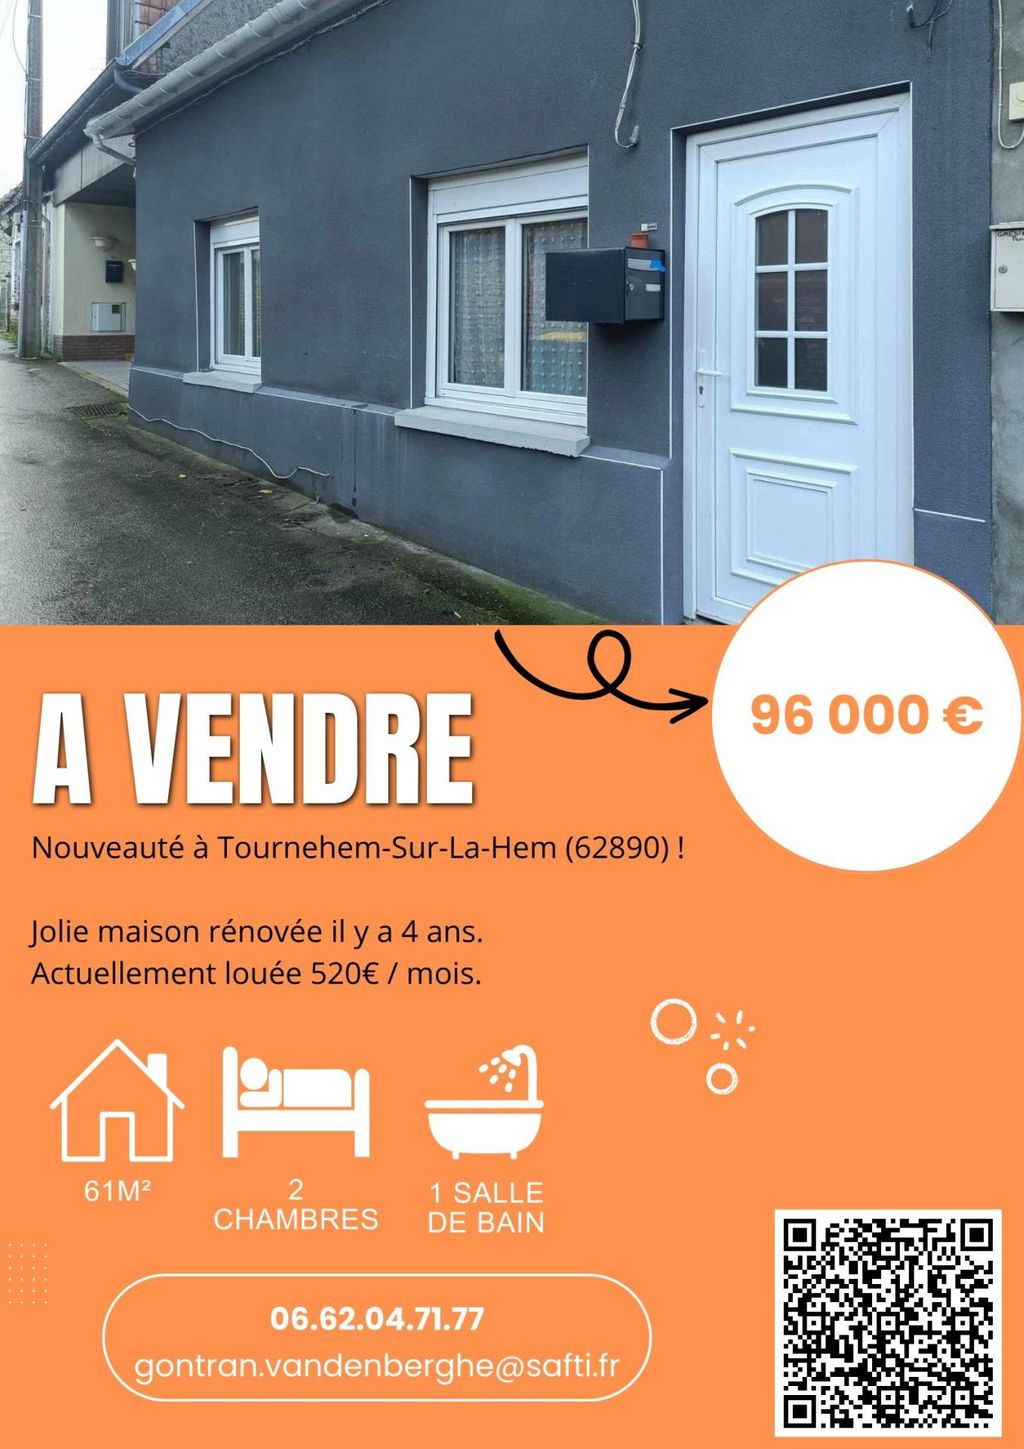 Achat maison à vendre 2 chambres 61 m² - Tournehem-sur-la-Hem